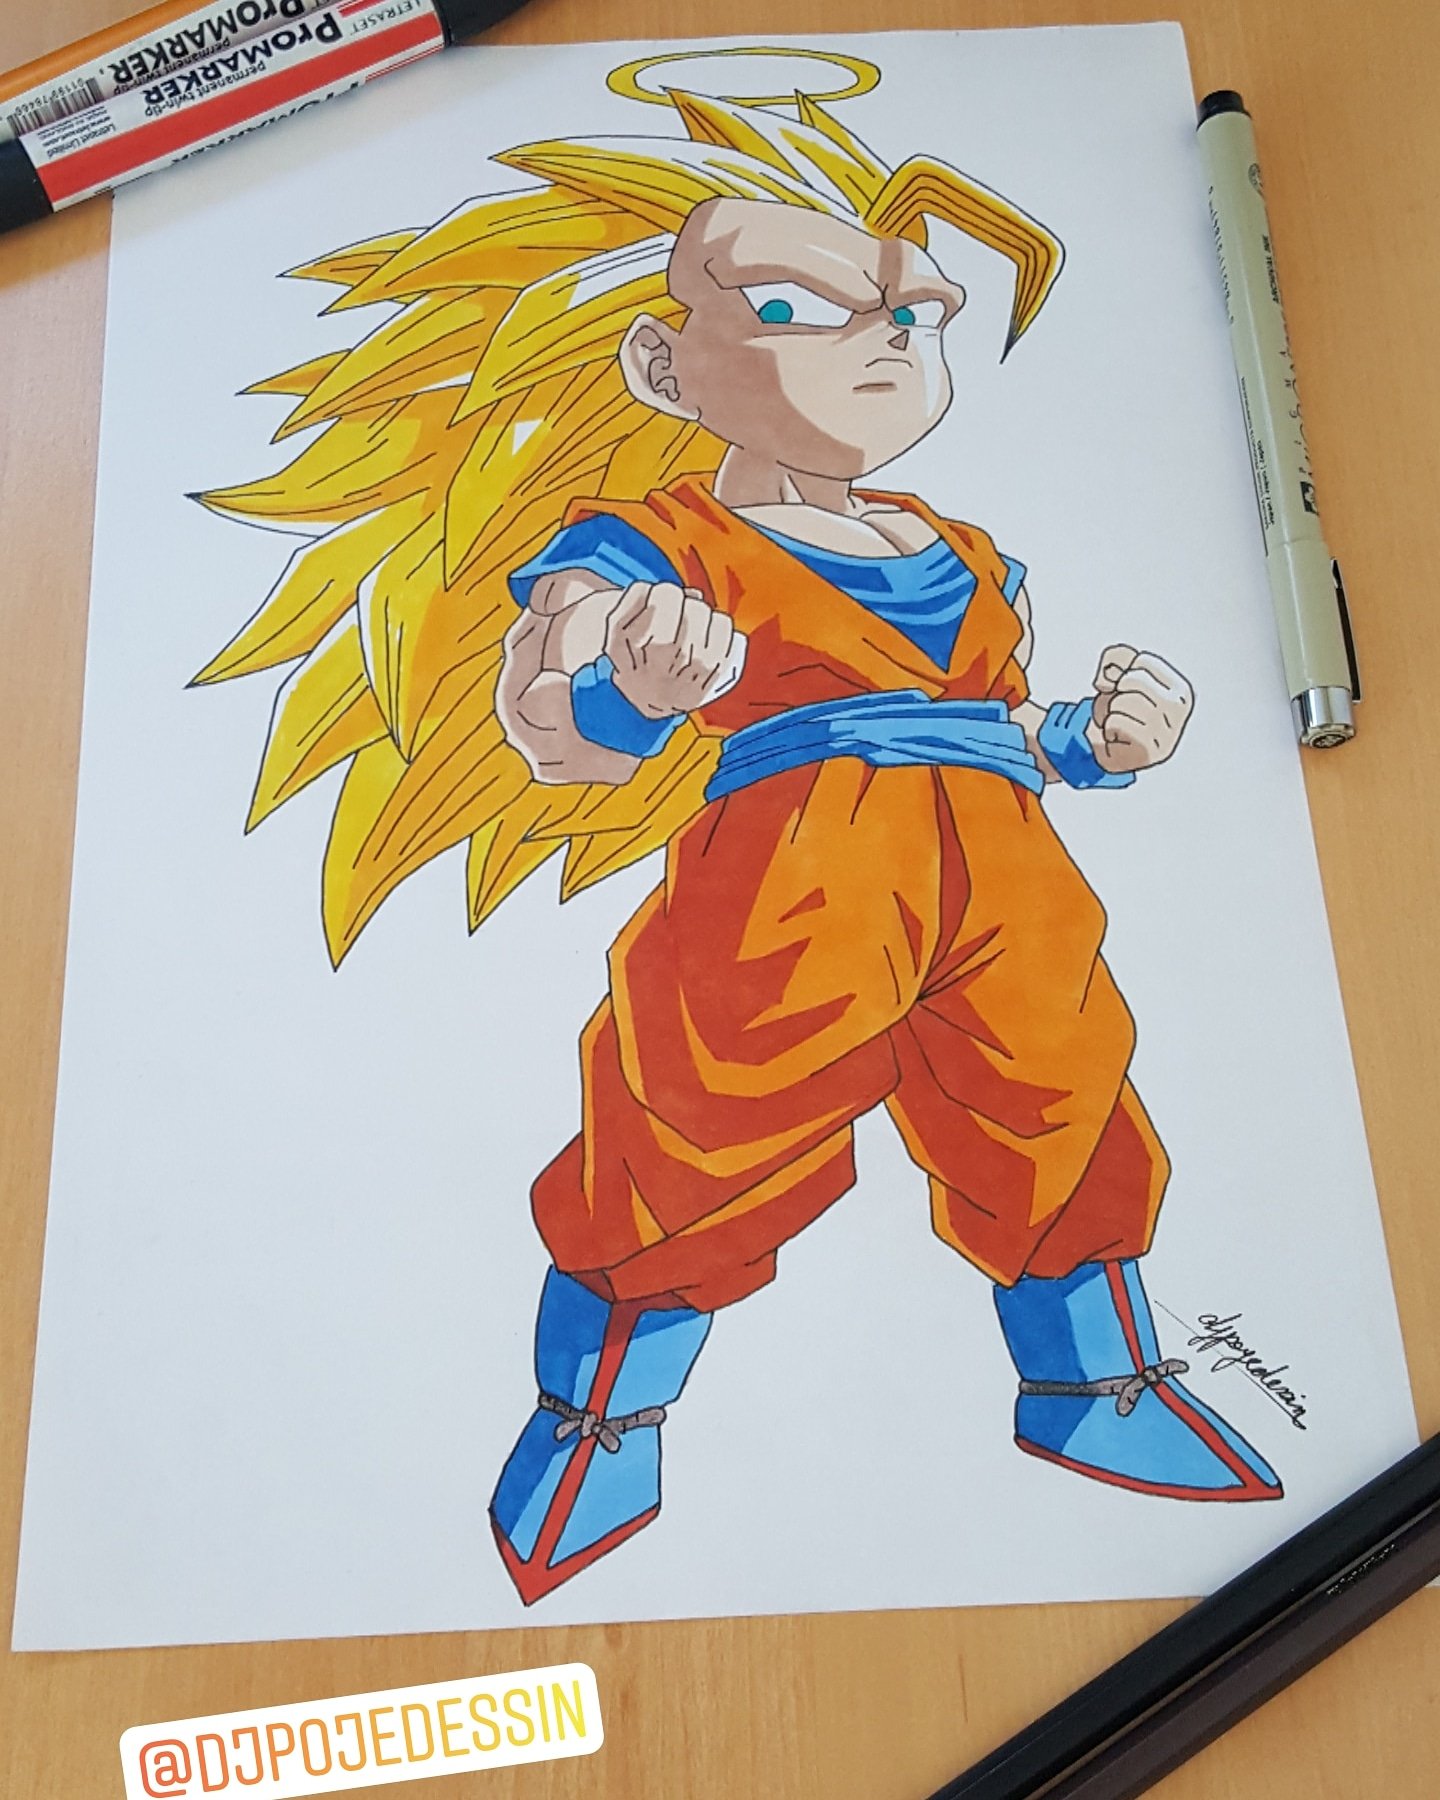 Anime drawings on X: super saiyan 3 Goku drawing #anime #dbz